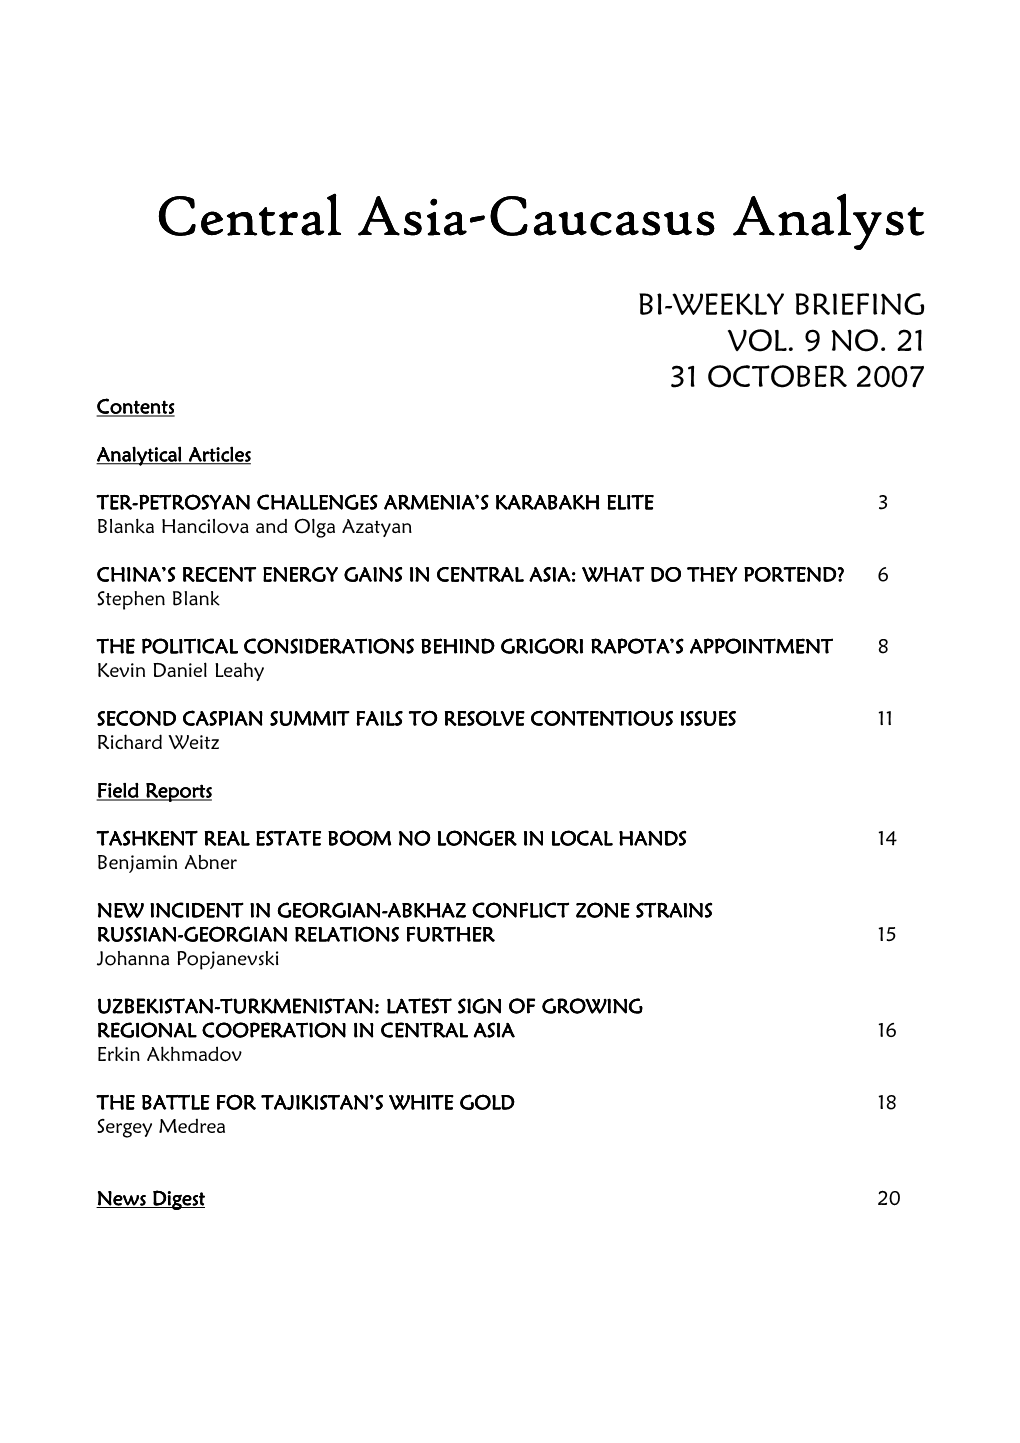 Central Asia-Caucasus Analyst Vol 9, No 21